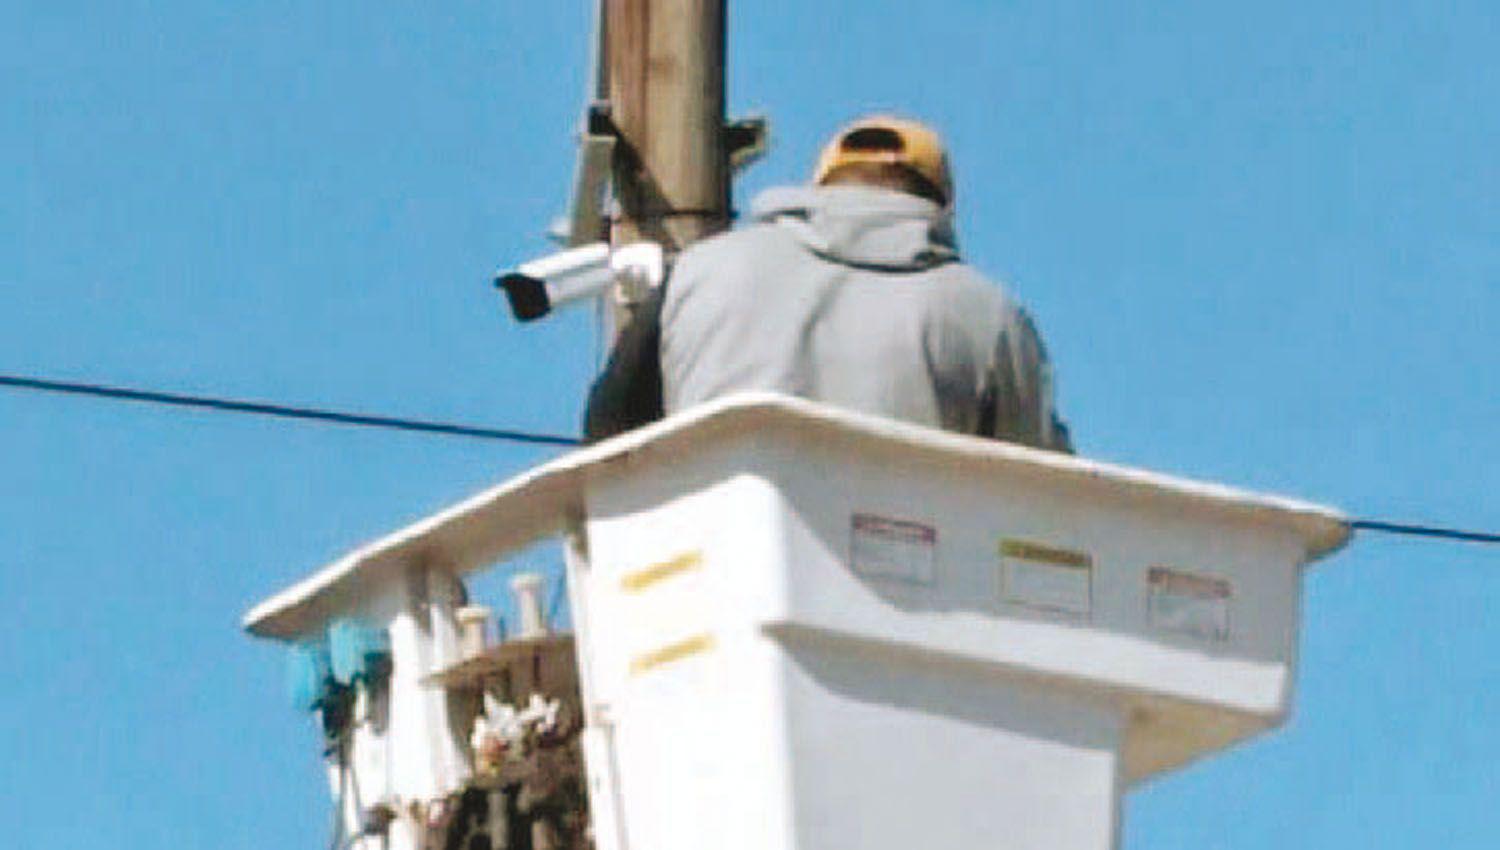 Instalan caacutemaras de vigilancia para reforzar la seguridad en Colonia Dora